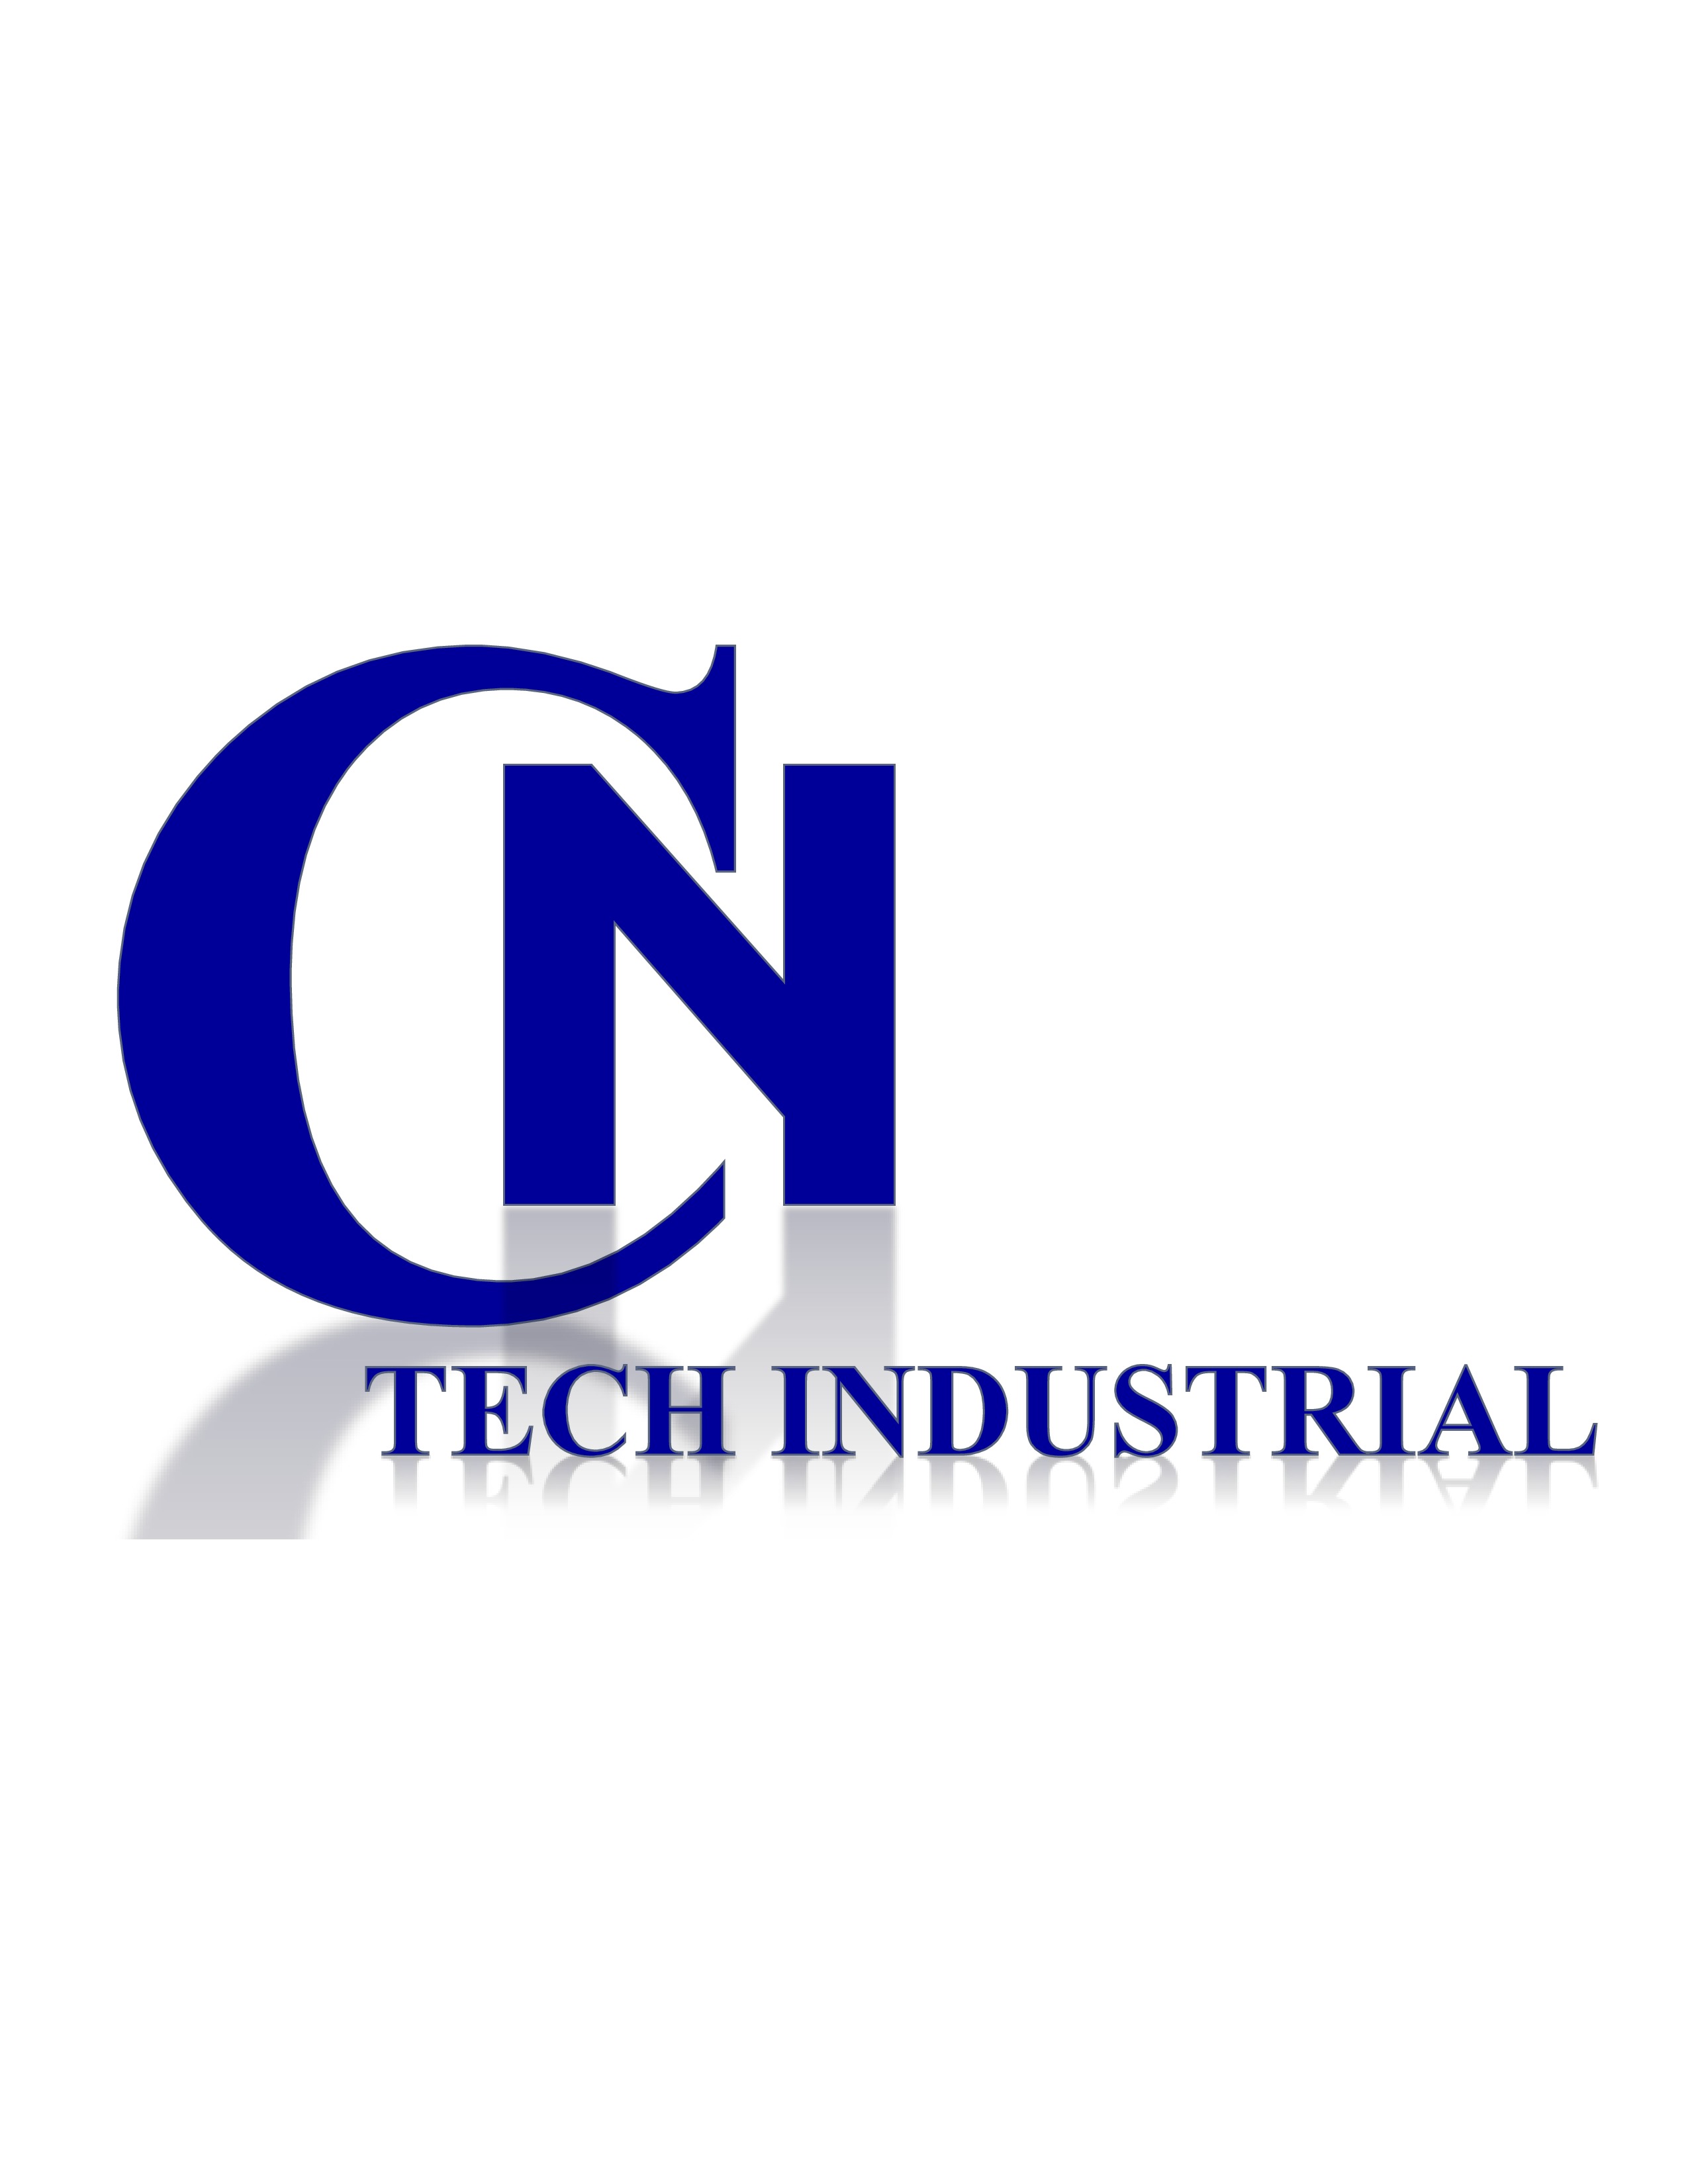 C.N.TECH INDUSTRIAL CO.,LTD., บริษัท ซี.เอ็น.เทค อินดัสเตรียล จำกัด